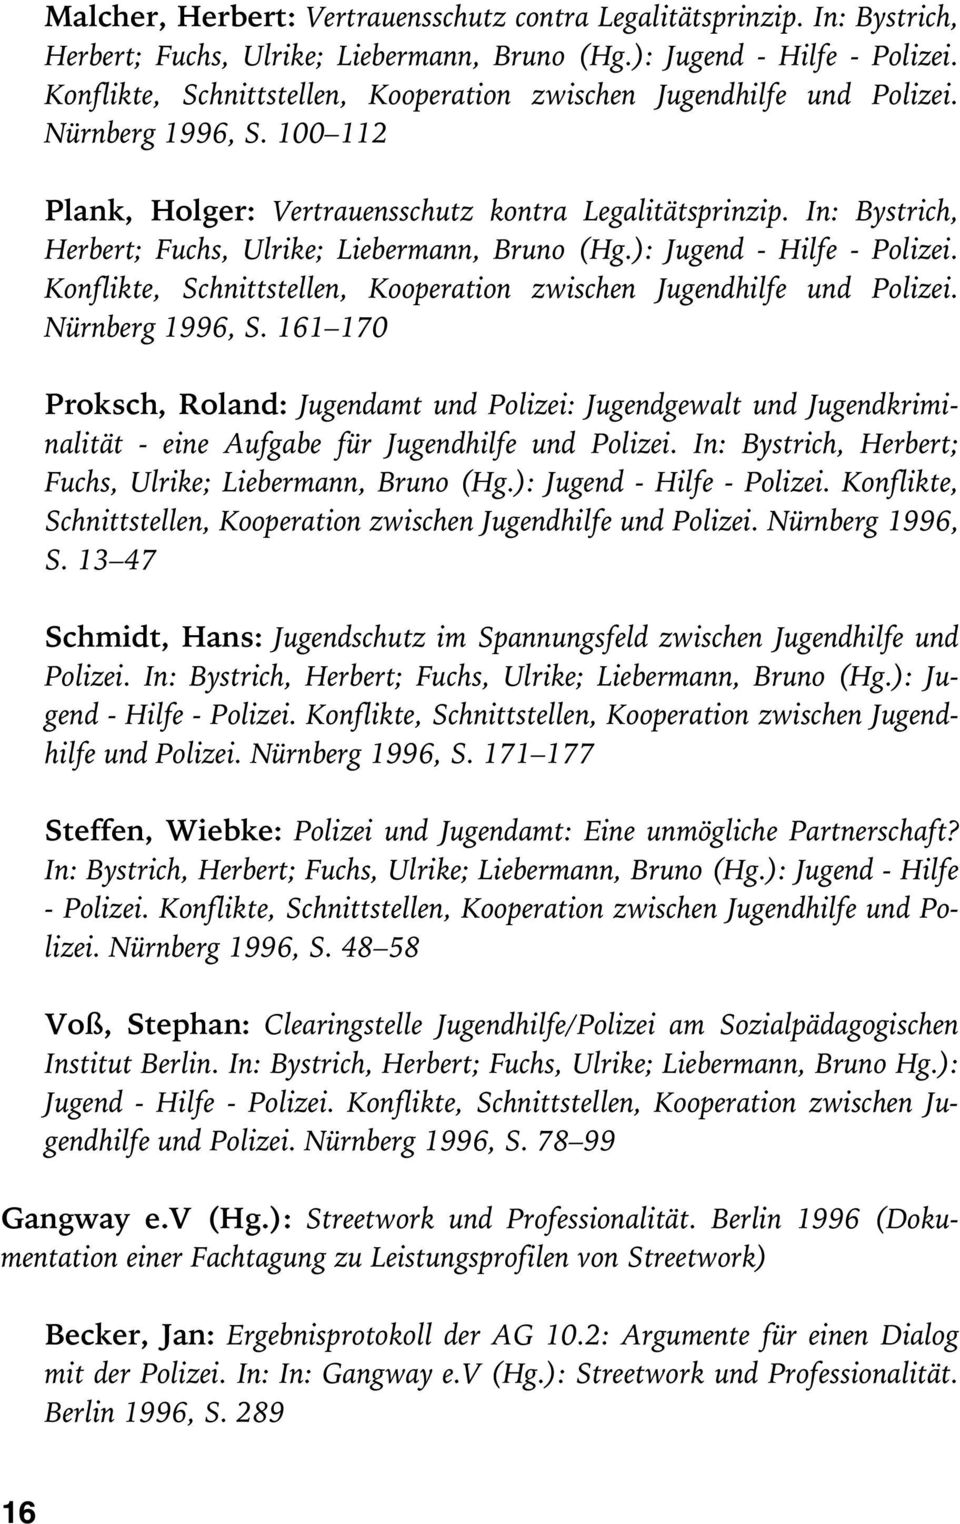 In: Bystrich, Herbert; Fuchs, Ulrike; Liebermann, Bruno (Hg.): Jugend - Hilfe - Polizei. Konflikte, Schnittstellen, Kooperation zwischen Jugendhilfe und Polizei. Nürnberg 1996, S.